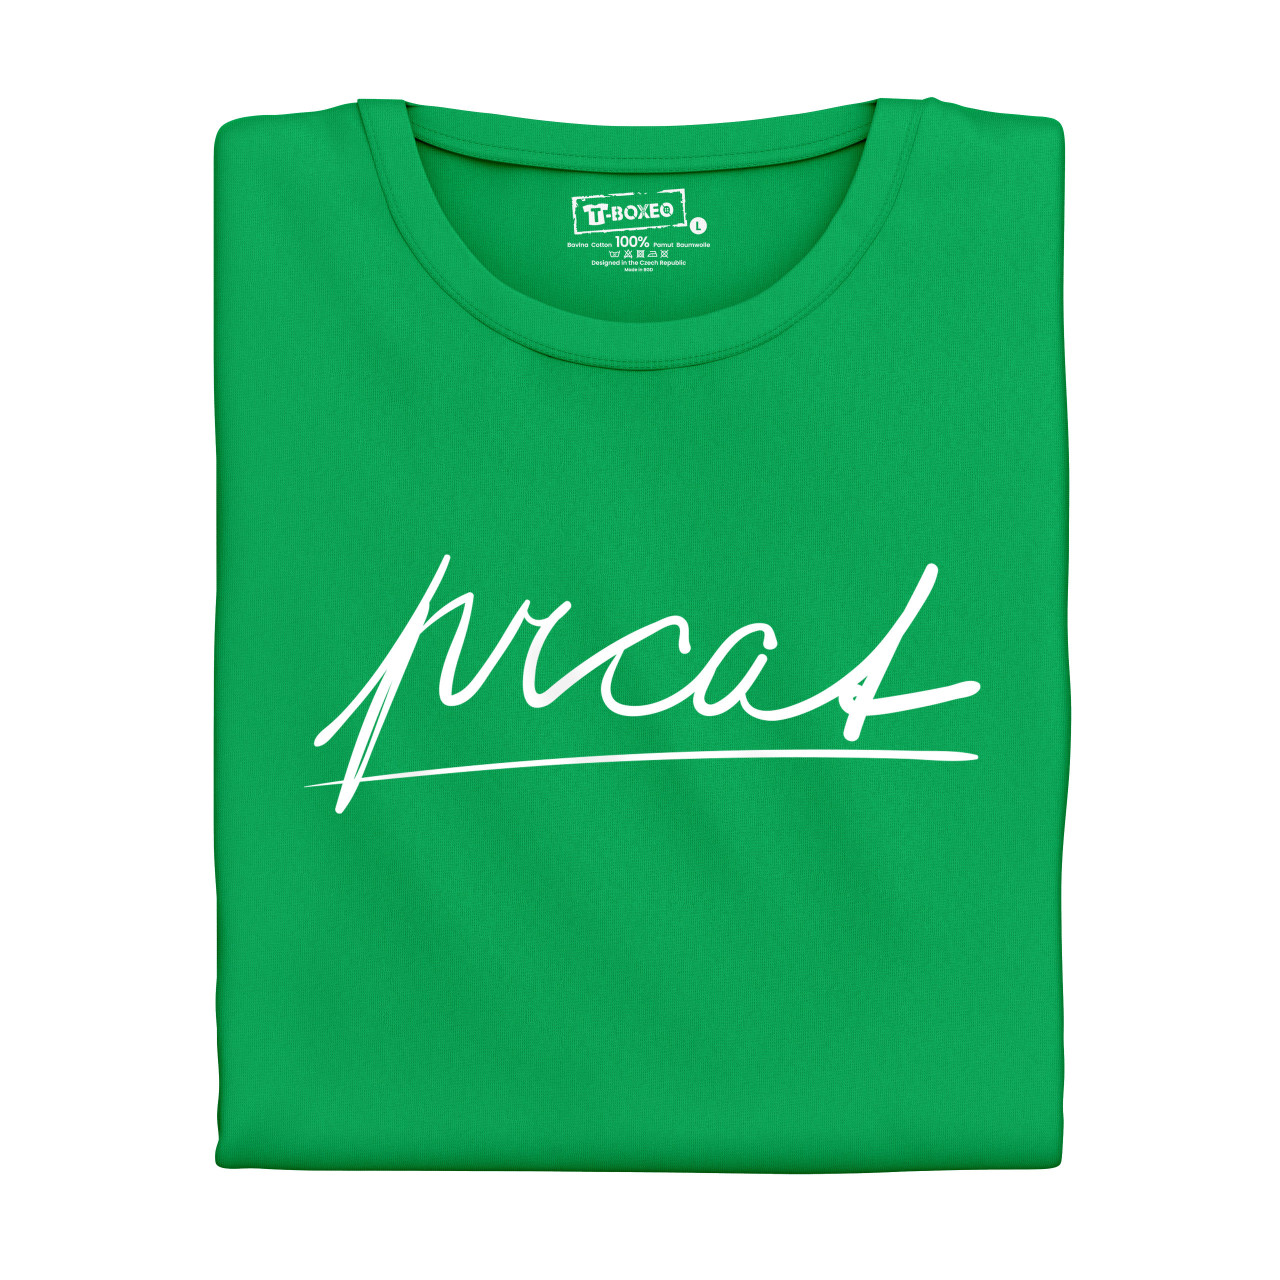 Pánské tričko s potiskem "Prcat"